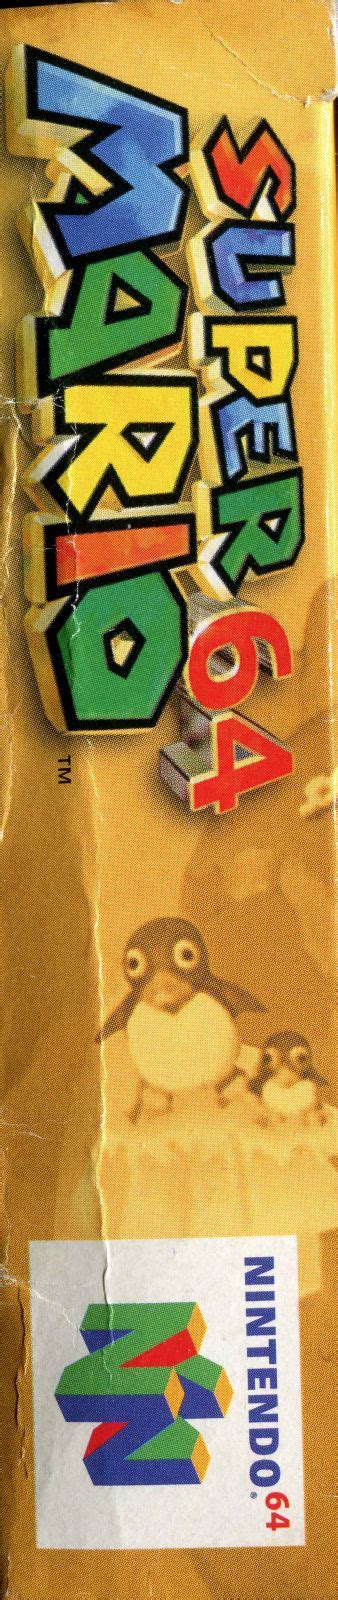 Super Mario 64 1996 Box Cover Art Mobygames